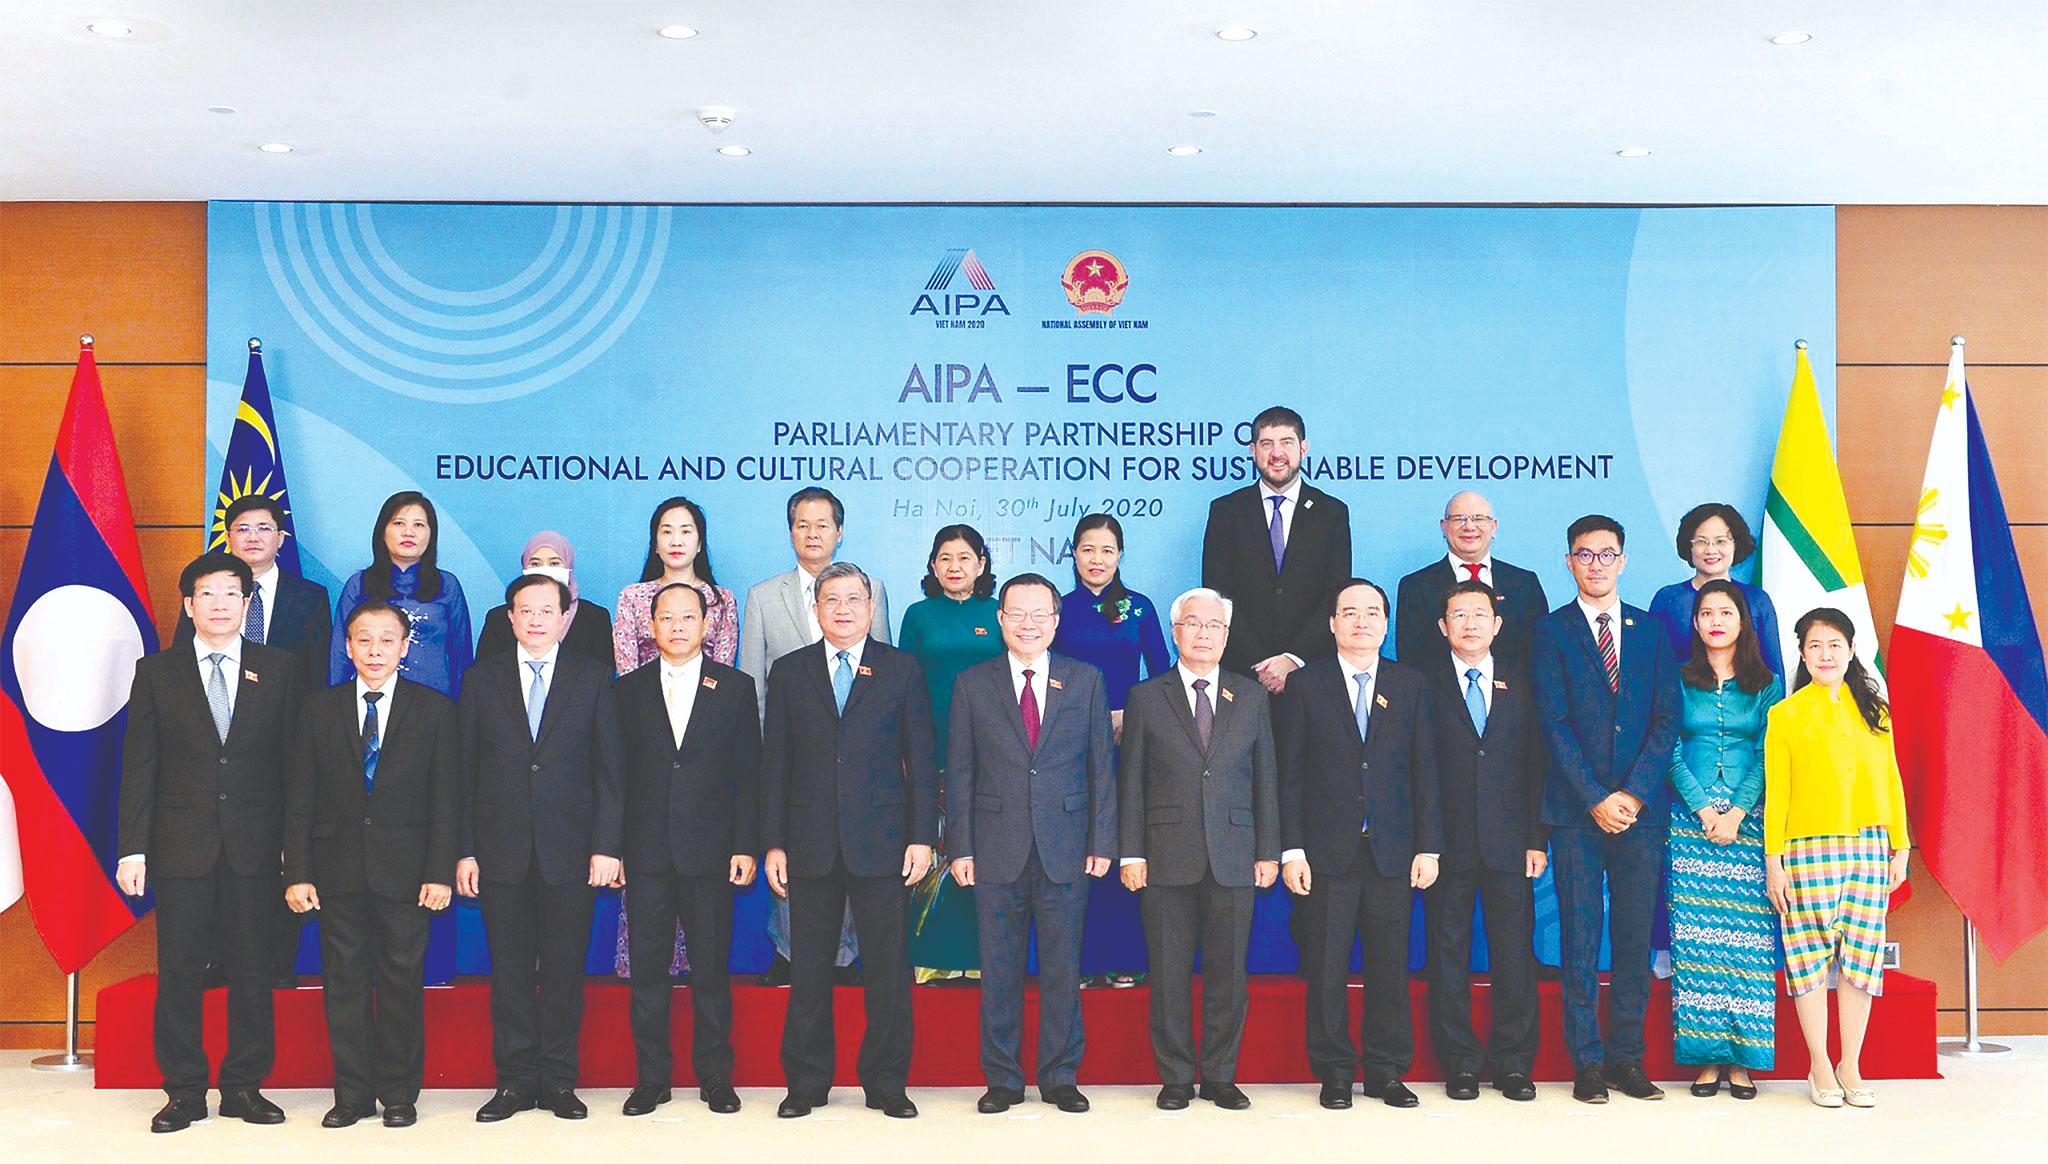 	Phó Chủ tịch Quốc hội Phùng Quốc Hiển với các đại biểu dự Hội nghị trực tuyến “Đối tác nghị viện về hợp tác giáo dục, văn hóa vì sự phát triển bền vững” (AIPA-ECC) tại điểm cầu Nhà Quốc hội, tháng 7.2020 Ảnh: Quang Khánh